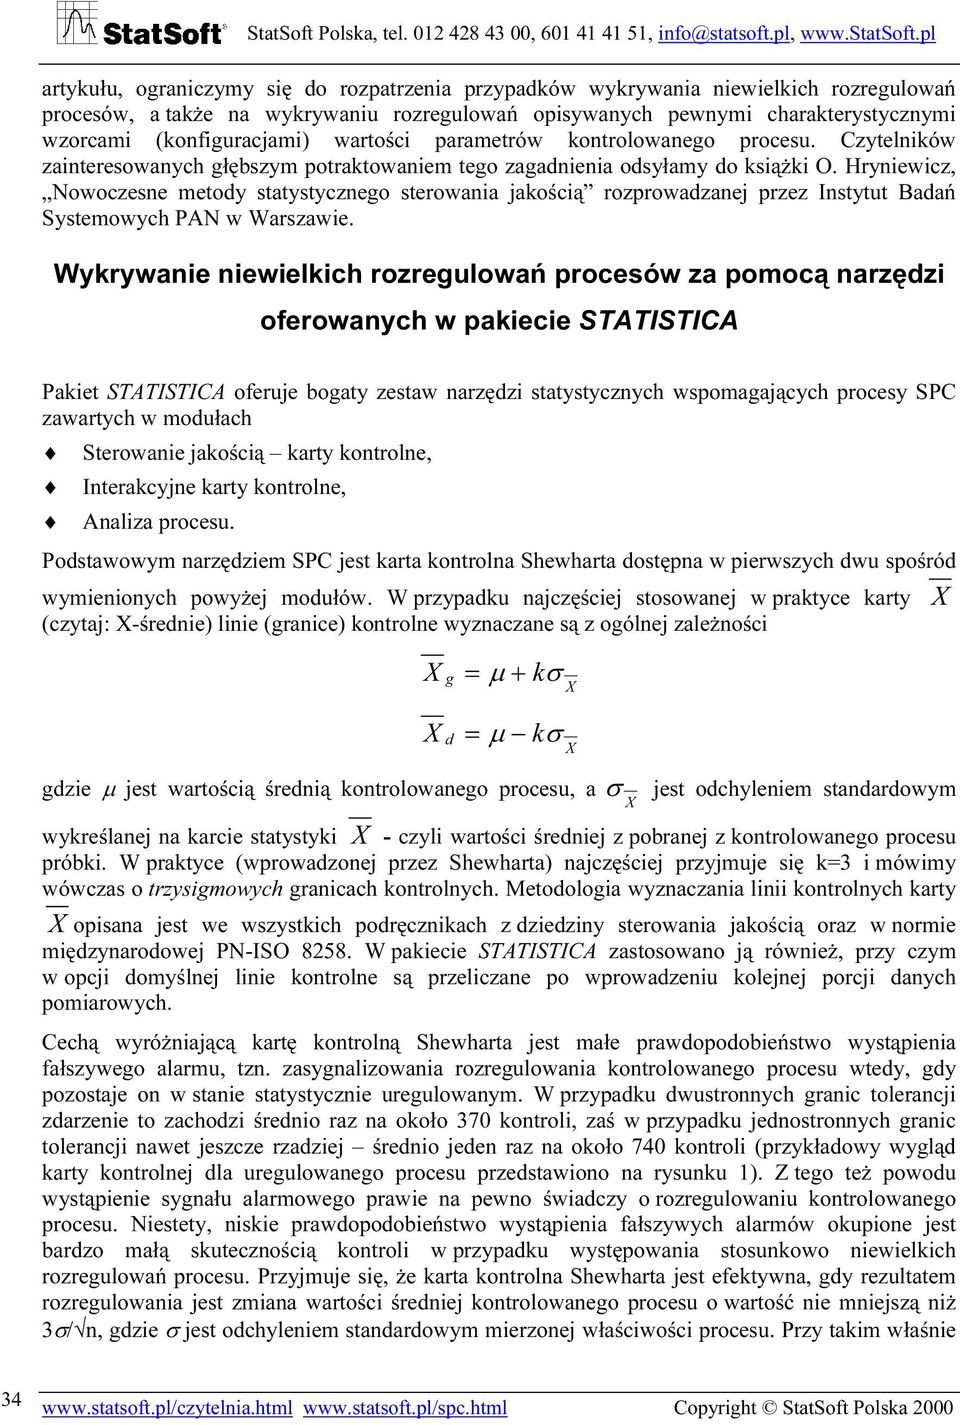 Hryniewicz, Nowoczesne metody statystycznego sterowania jakością rozprowadzanej przez Instytut Badań Systemowych PAN w Warszawie.